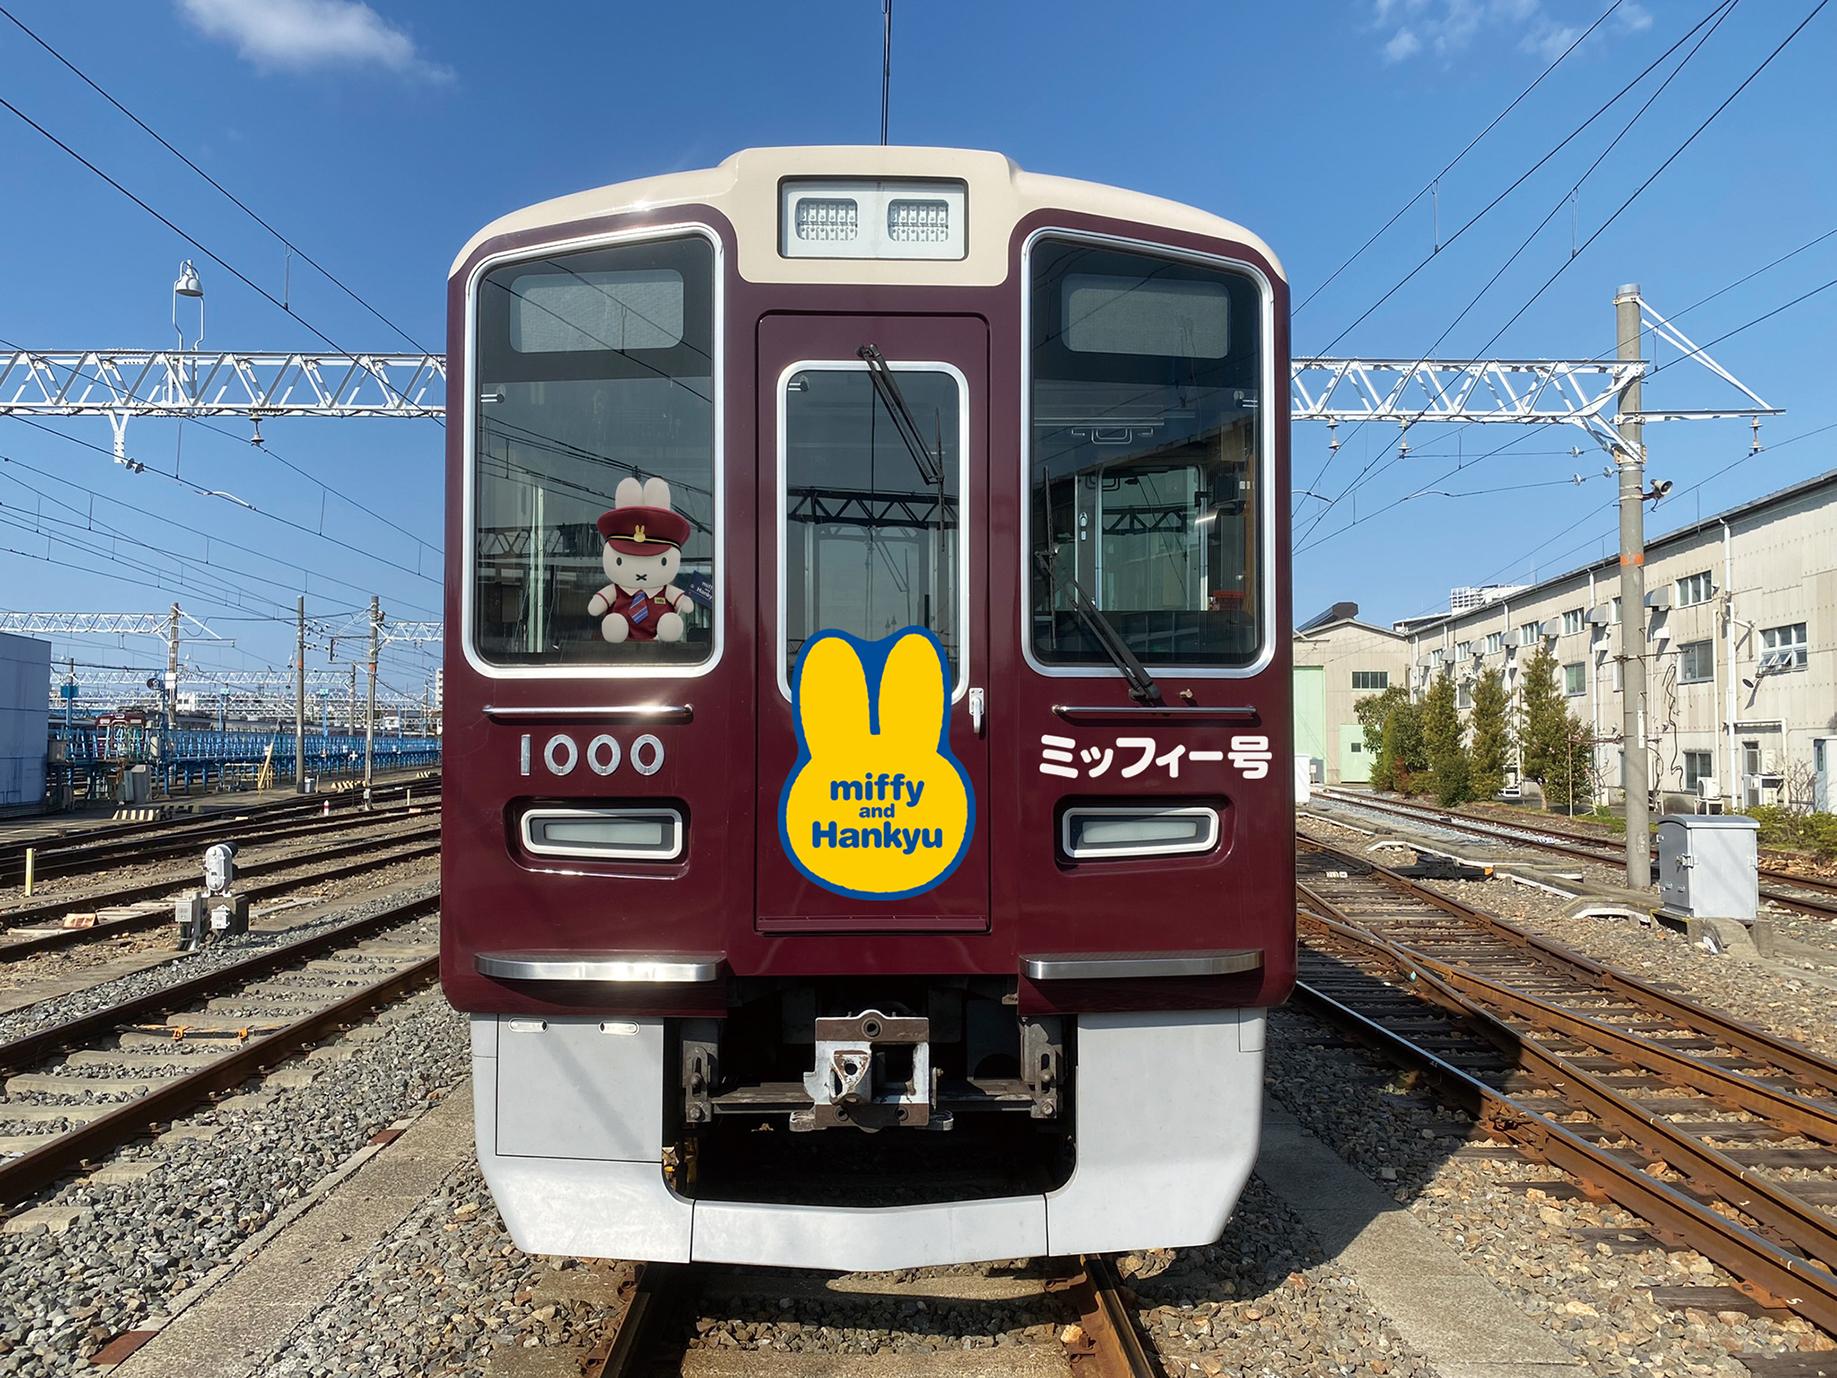 ミッフィーと阪急電車のコラボレーションが決定 8 3 水 ミッフィー号 を運行します レールファン阪急 阪急電車 公式鉄道ファンサイト 阪急電鉄